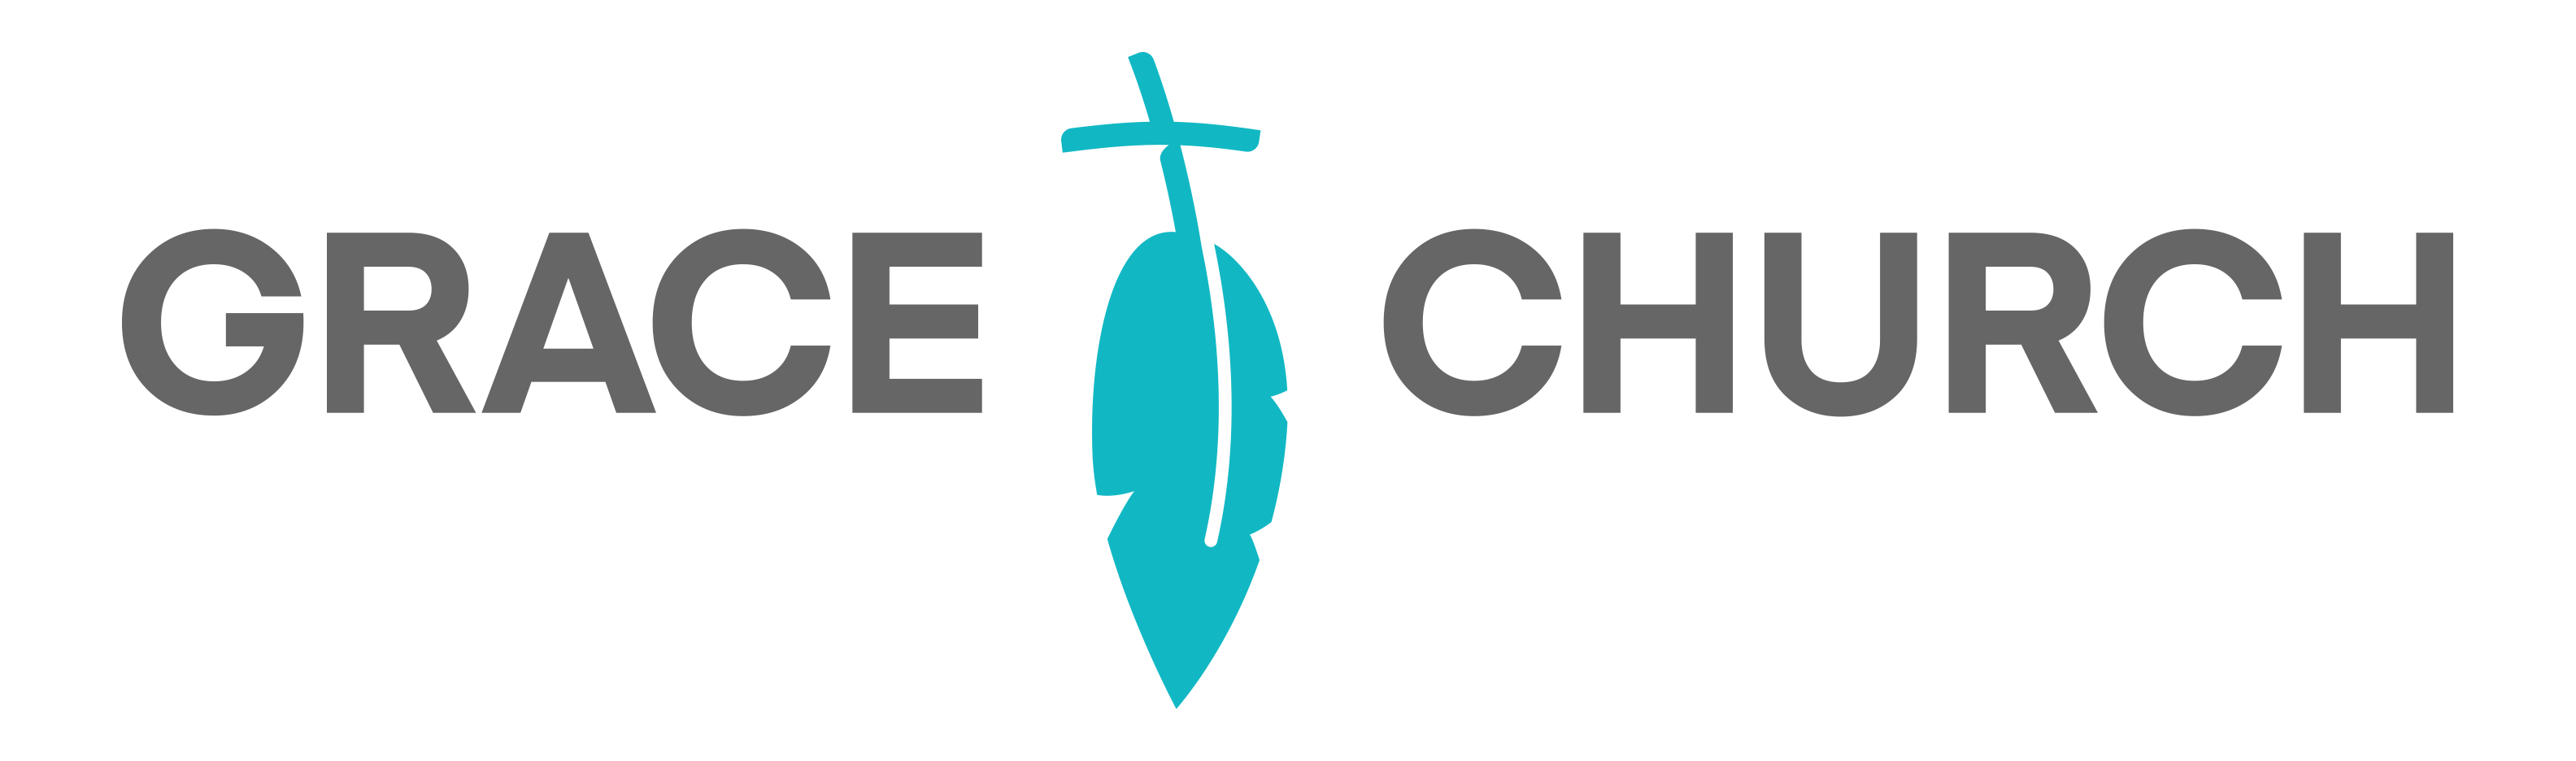 Large Grace logo